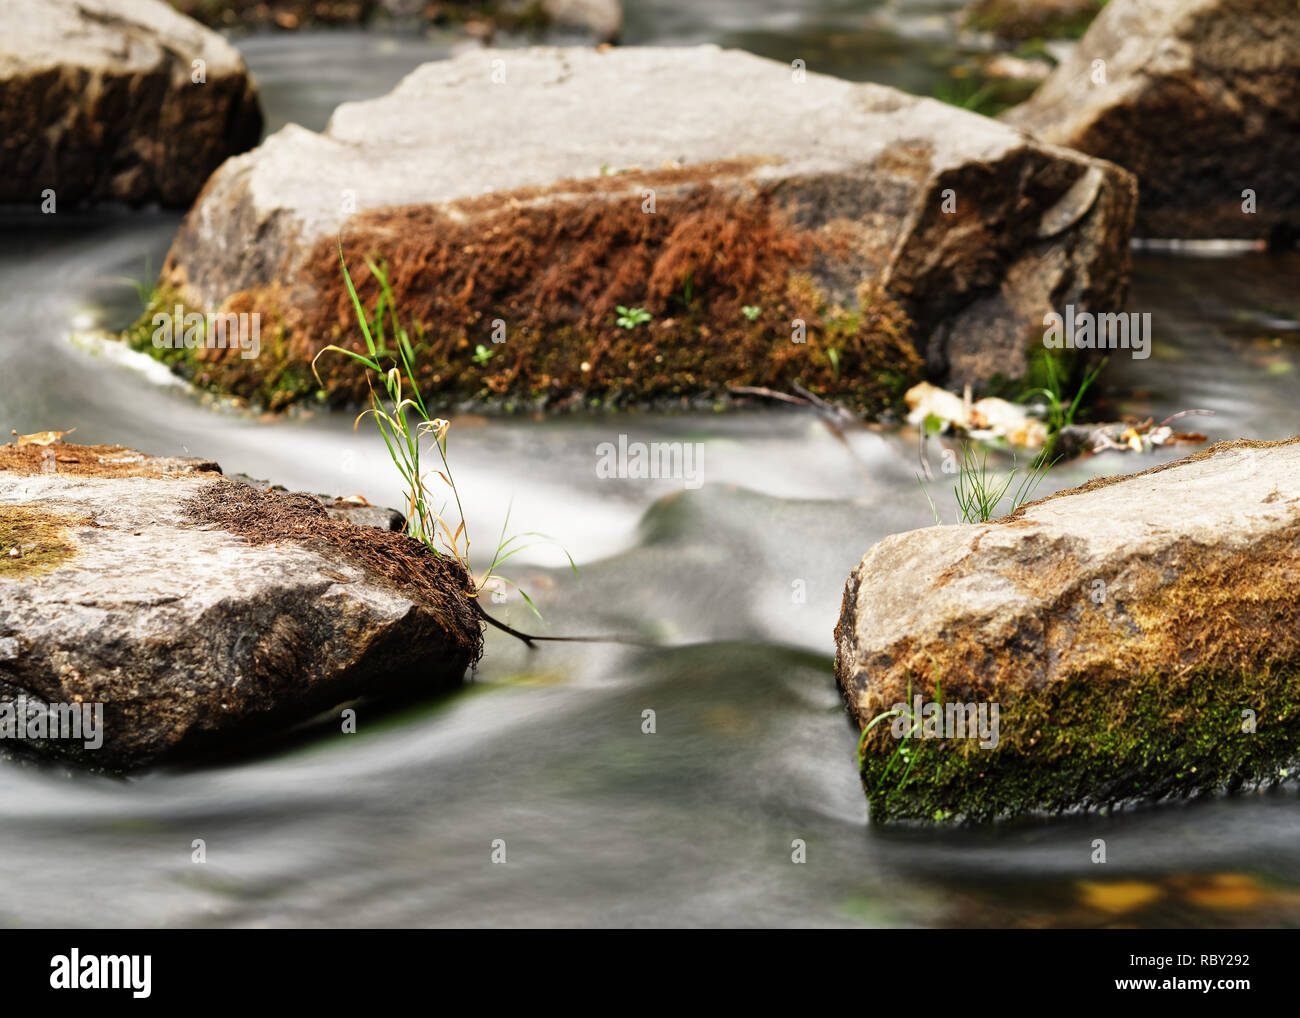 Detailansicht des fließenden Wasser eines kleinen Flusses, das Wasser fließt, Steine mit Moos und einzelne Büschel Gras bedeckt, schmale schärfen Zone, flowi Stockfoto